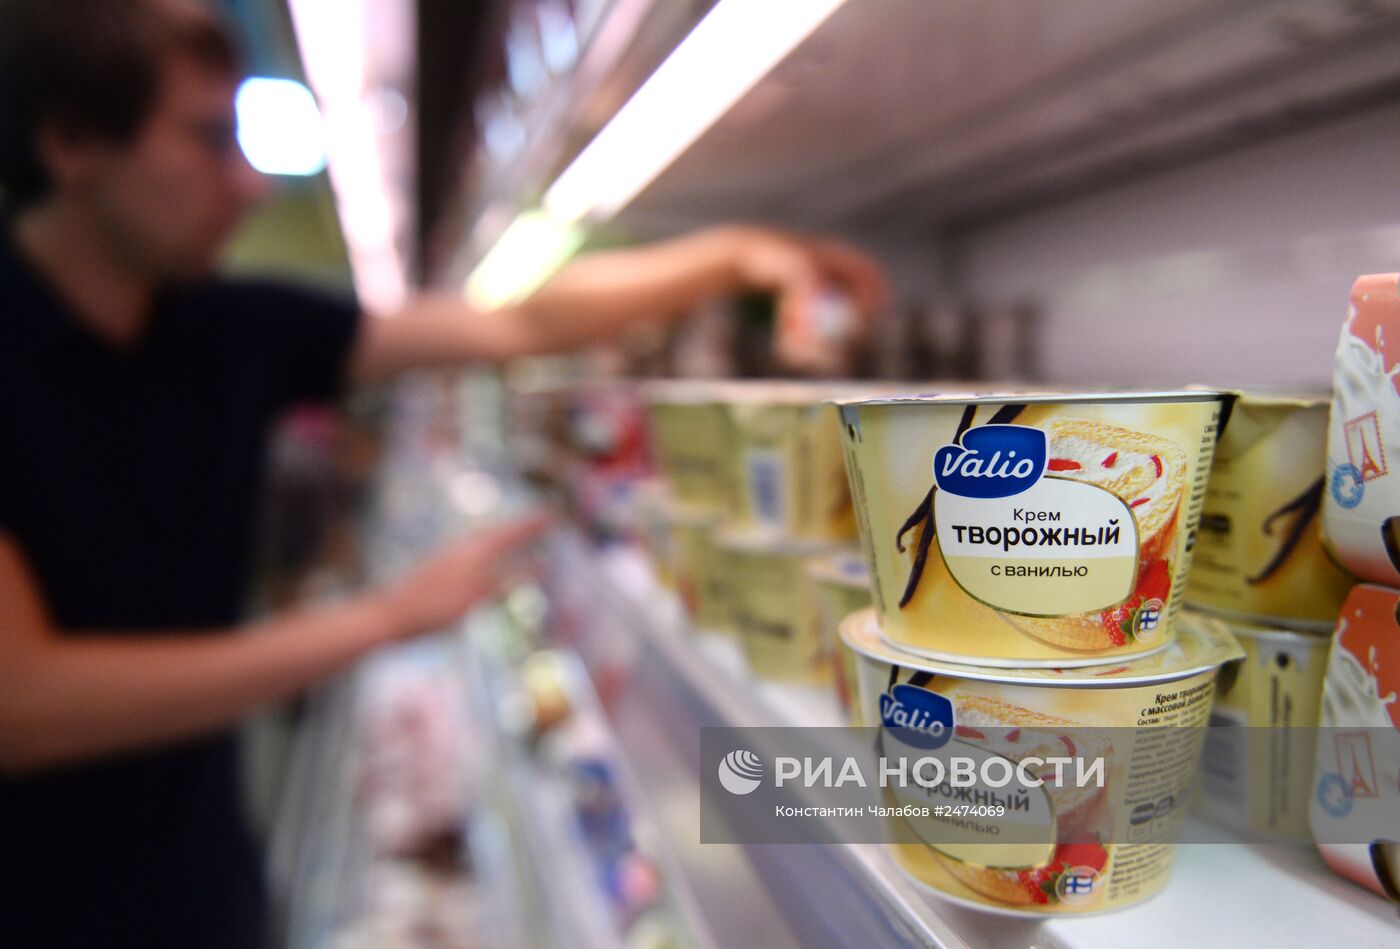 Продажа продуктов финского производителя молочных продуктов Valio